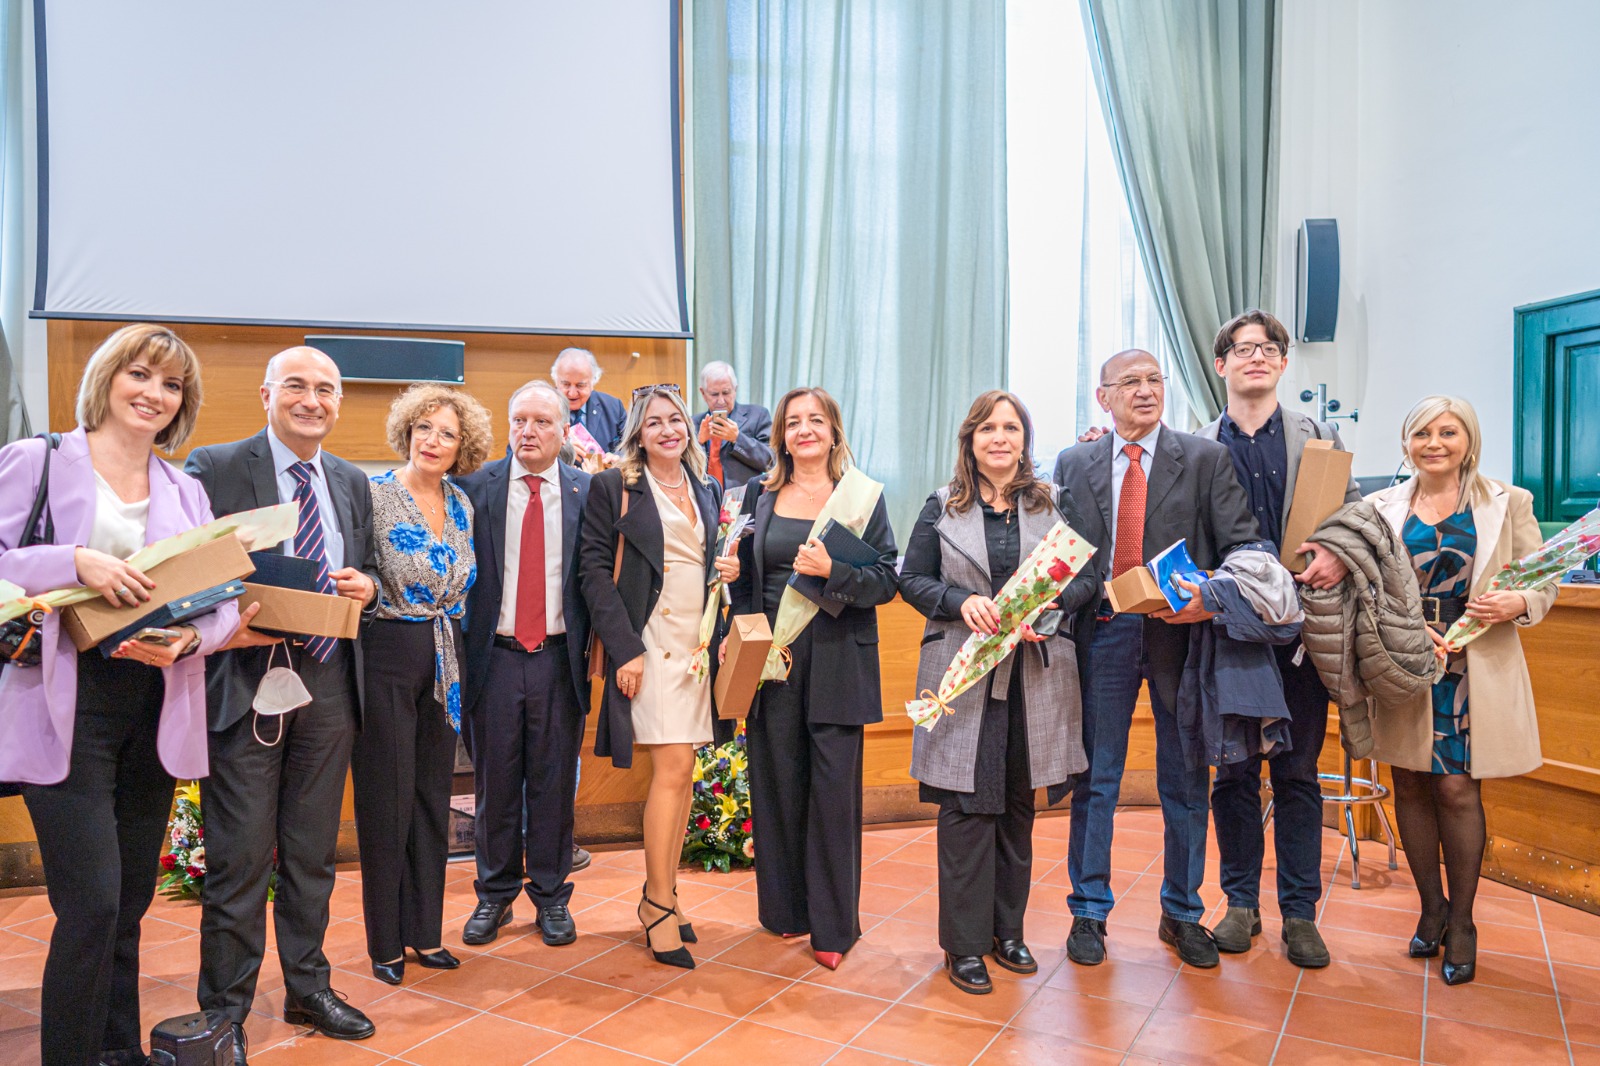 Mercato San Severino: Premio Corbisiero a Gilda Pantuliano per “Le orme sull’acqua”